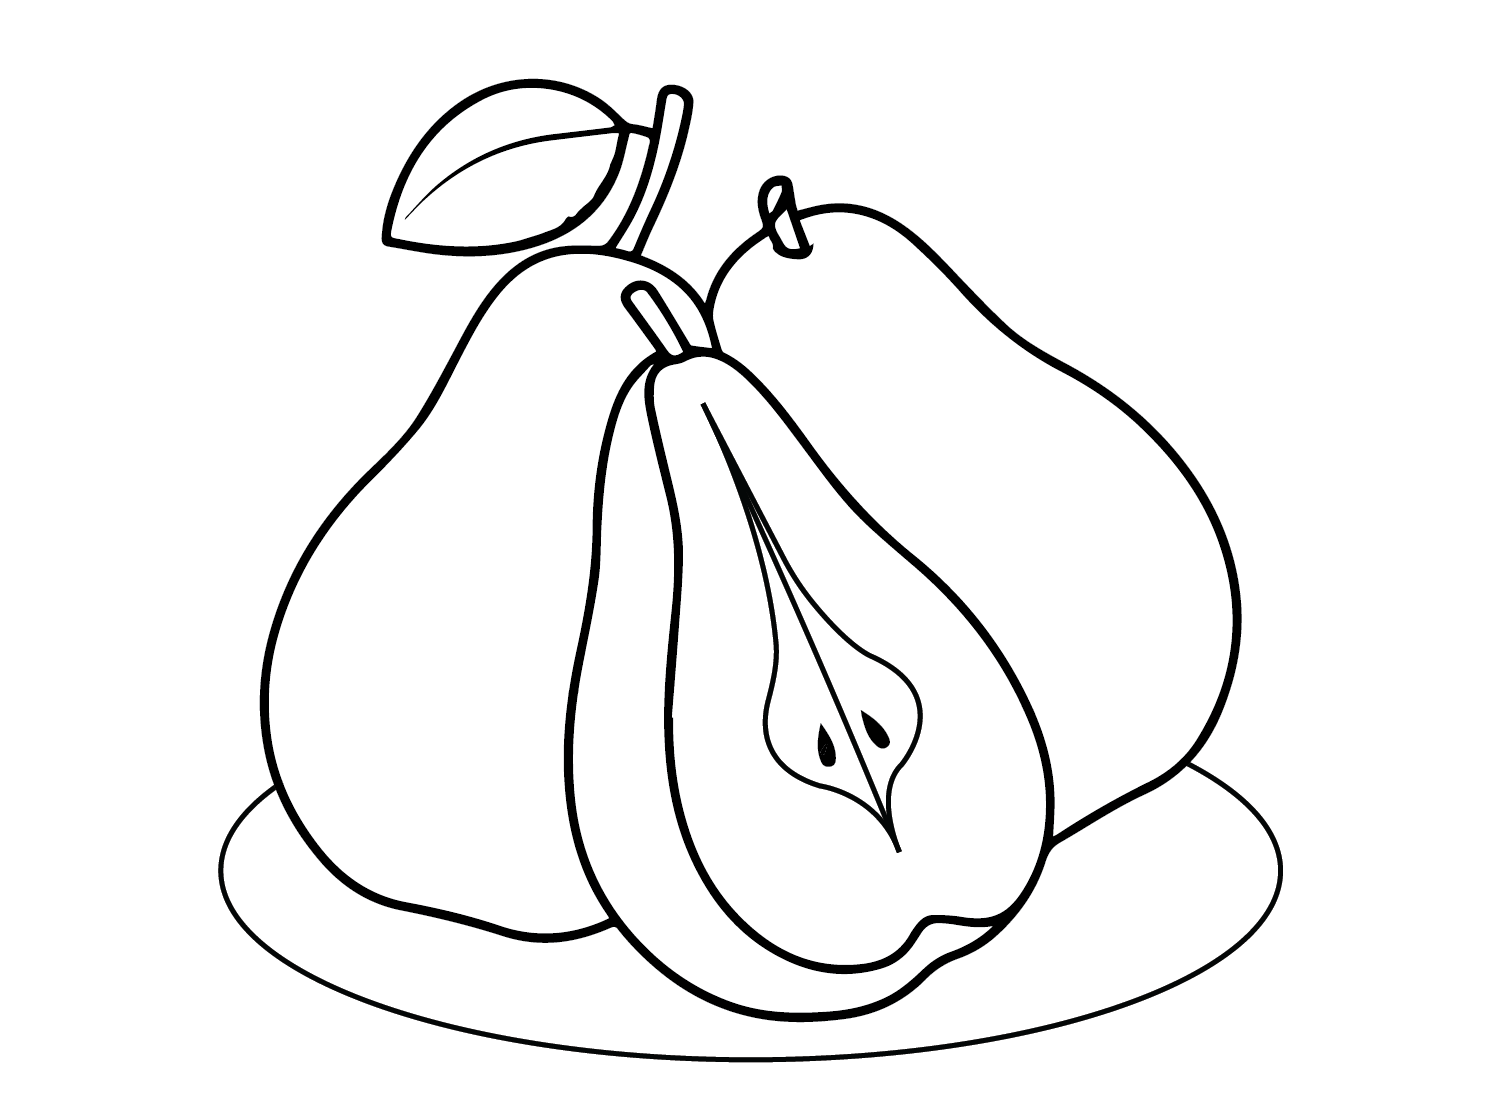 Peras dibujadas a partir de peras